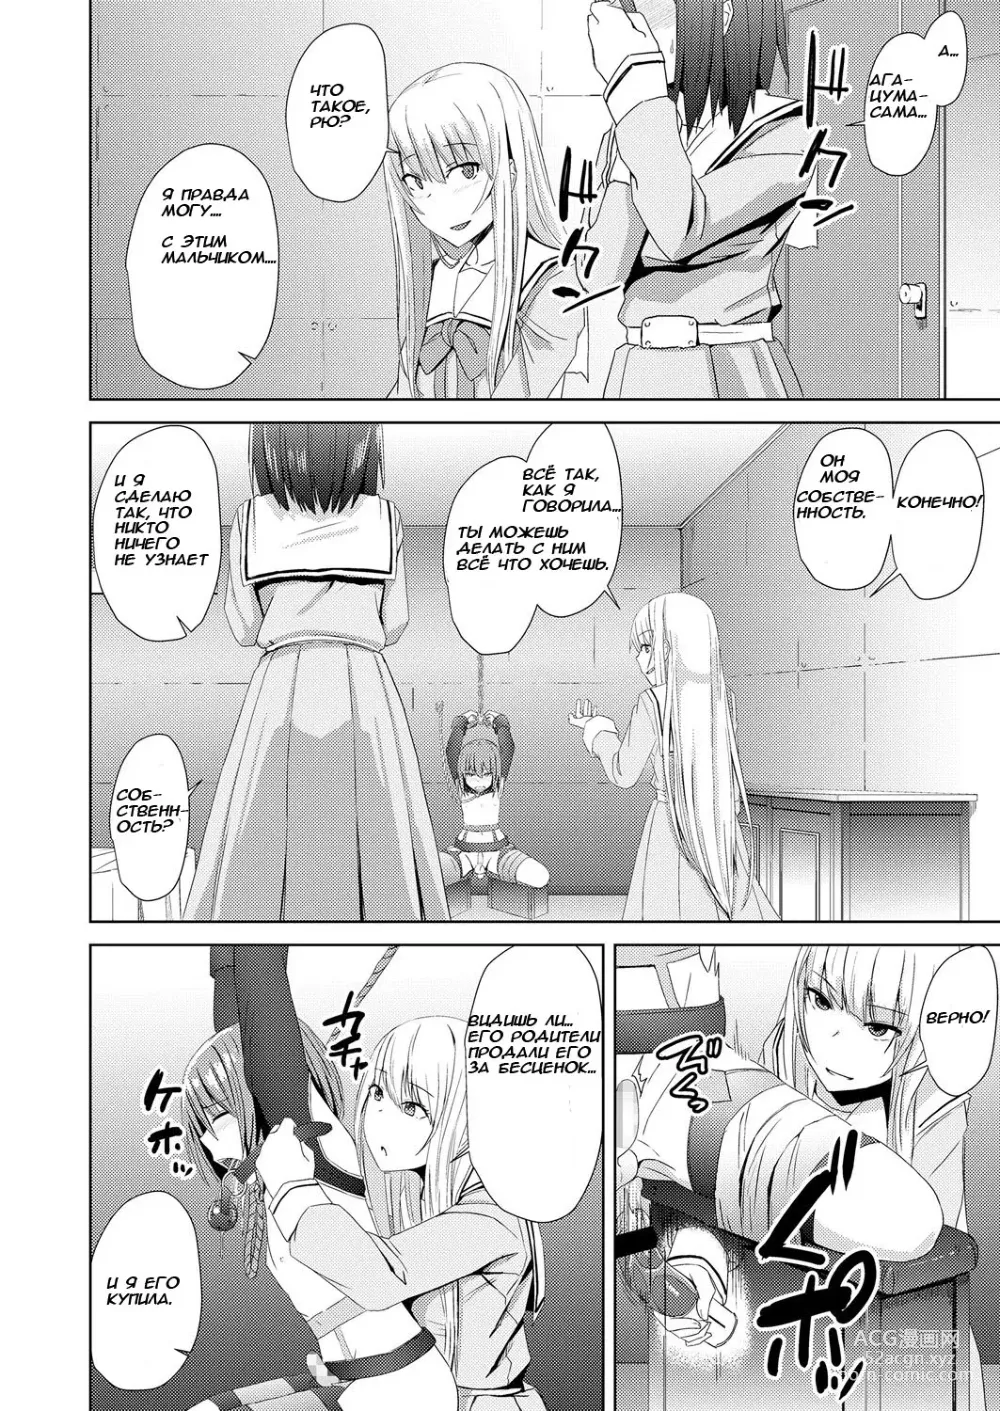 Page 6 of manga Watashitachi no Kizashi